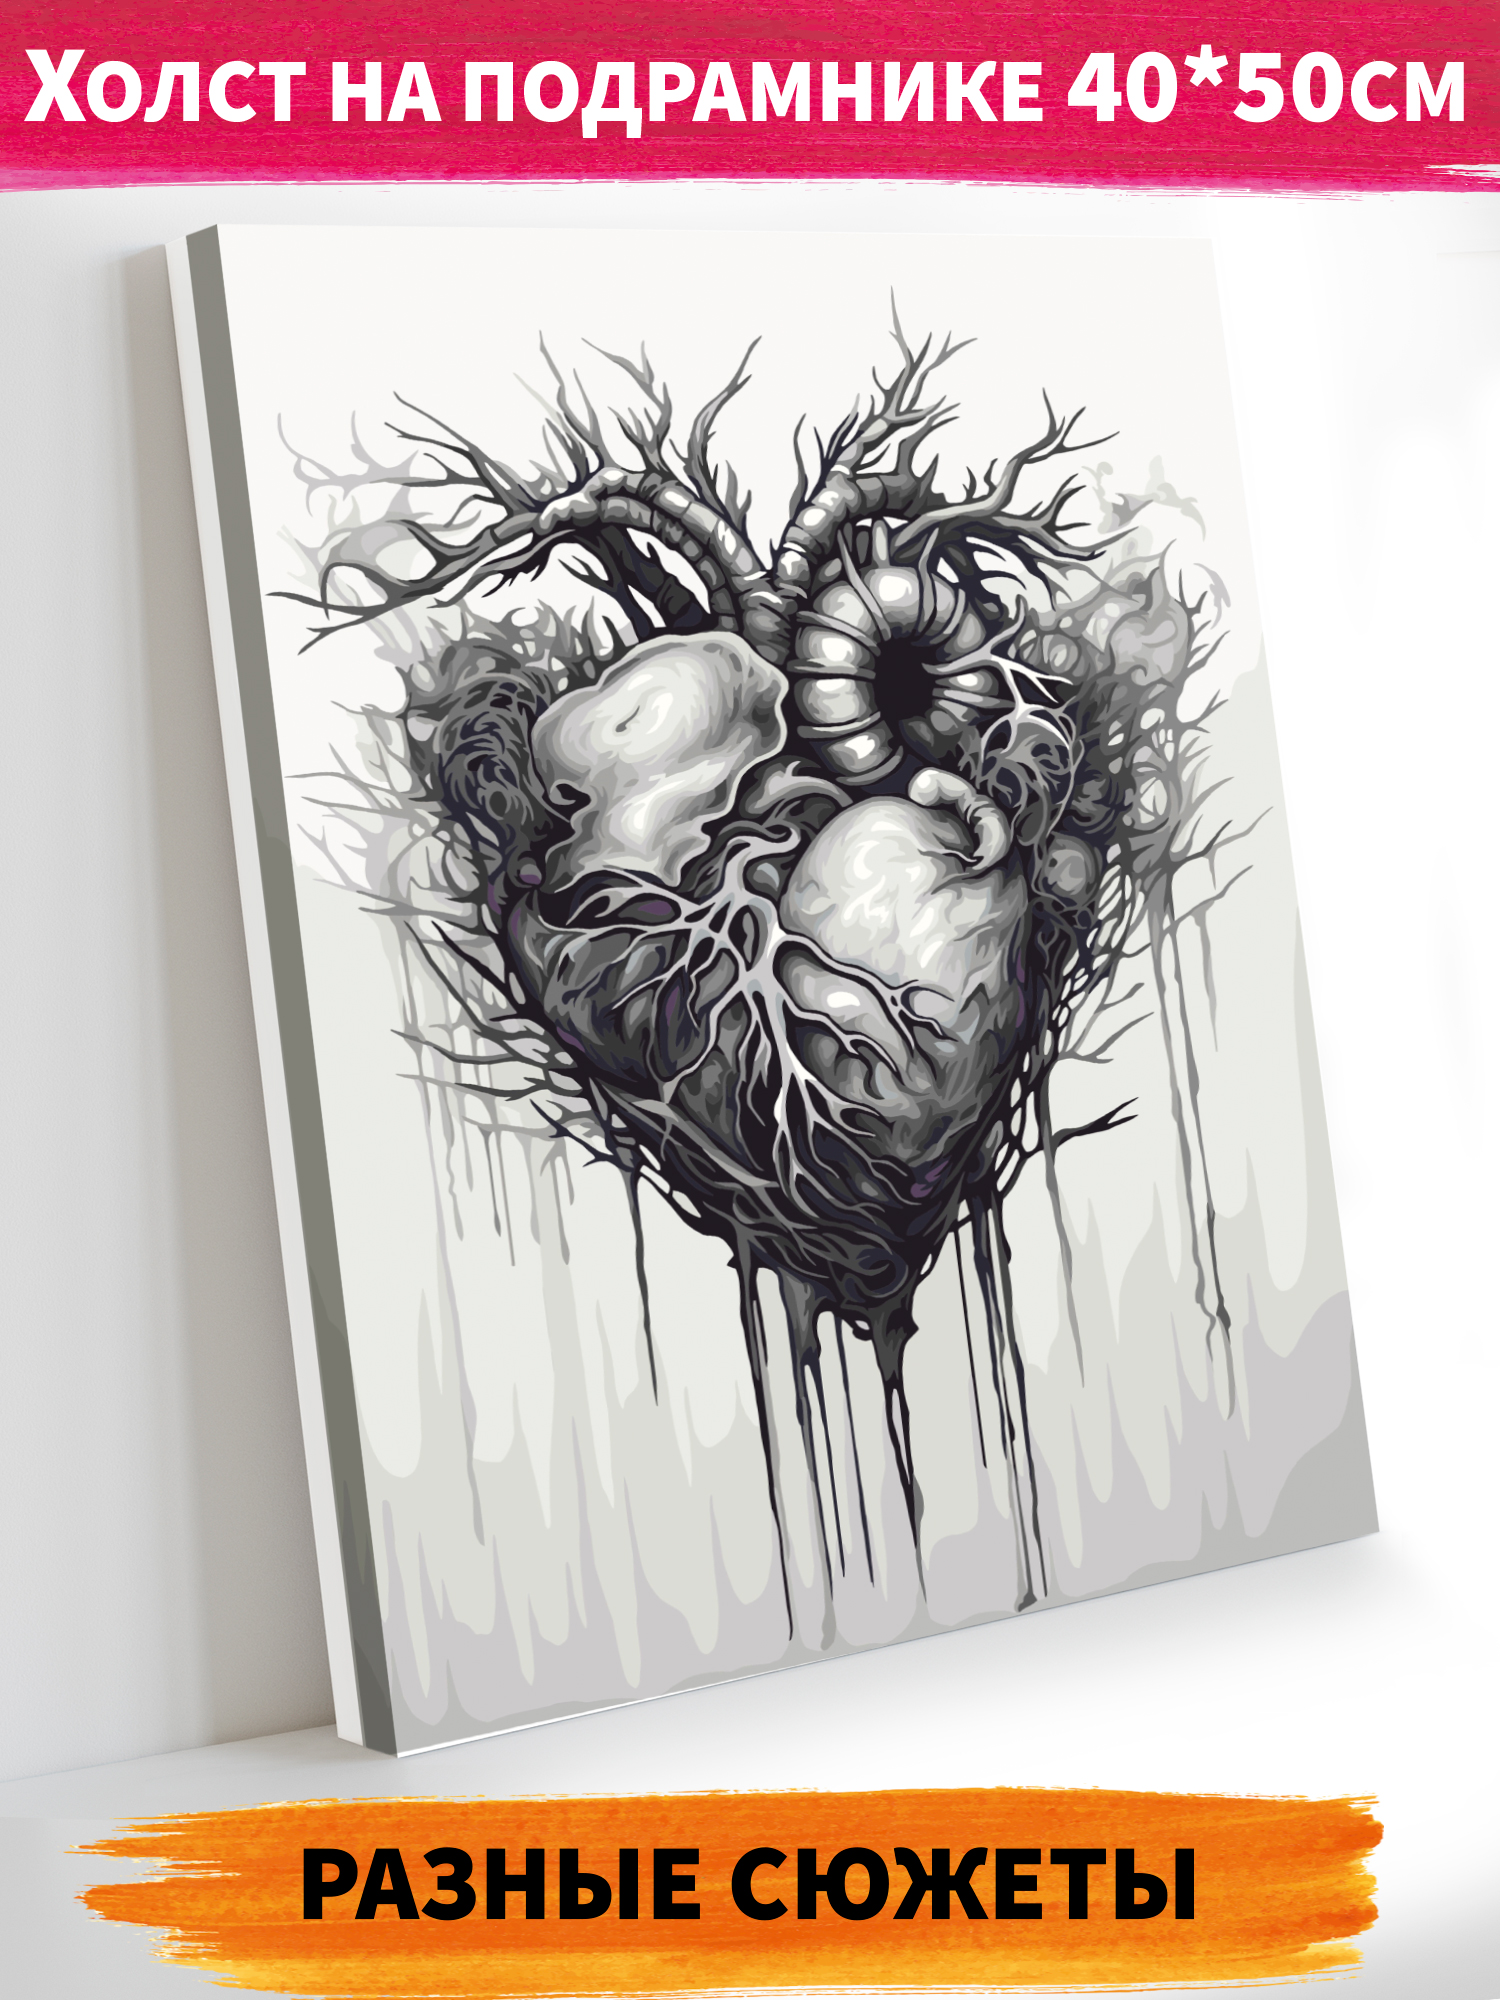 Картина по номерам Hobby Paint холст на подрамнике 40х50 см Сердце - фото 1